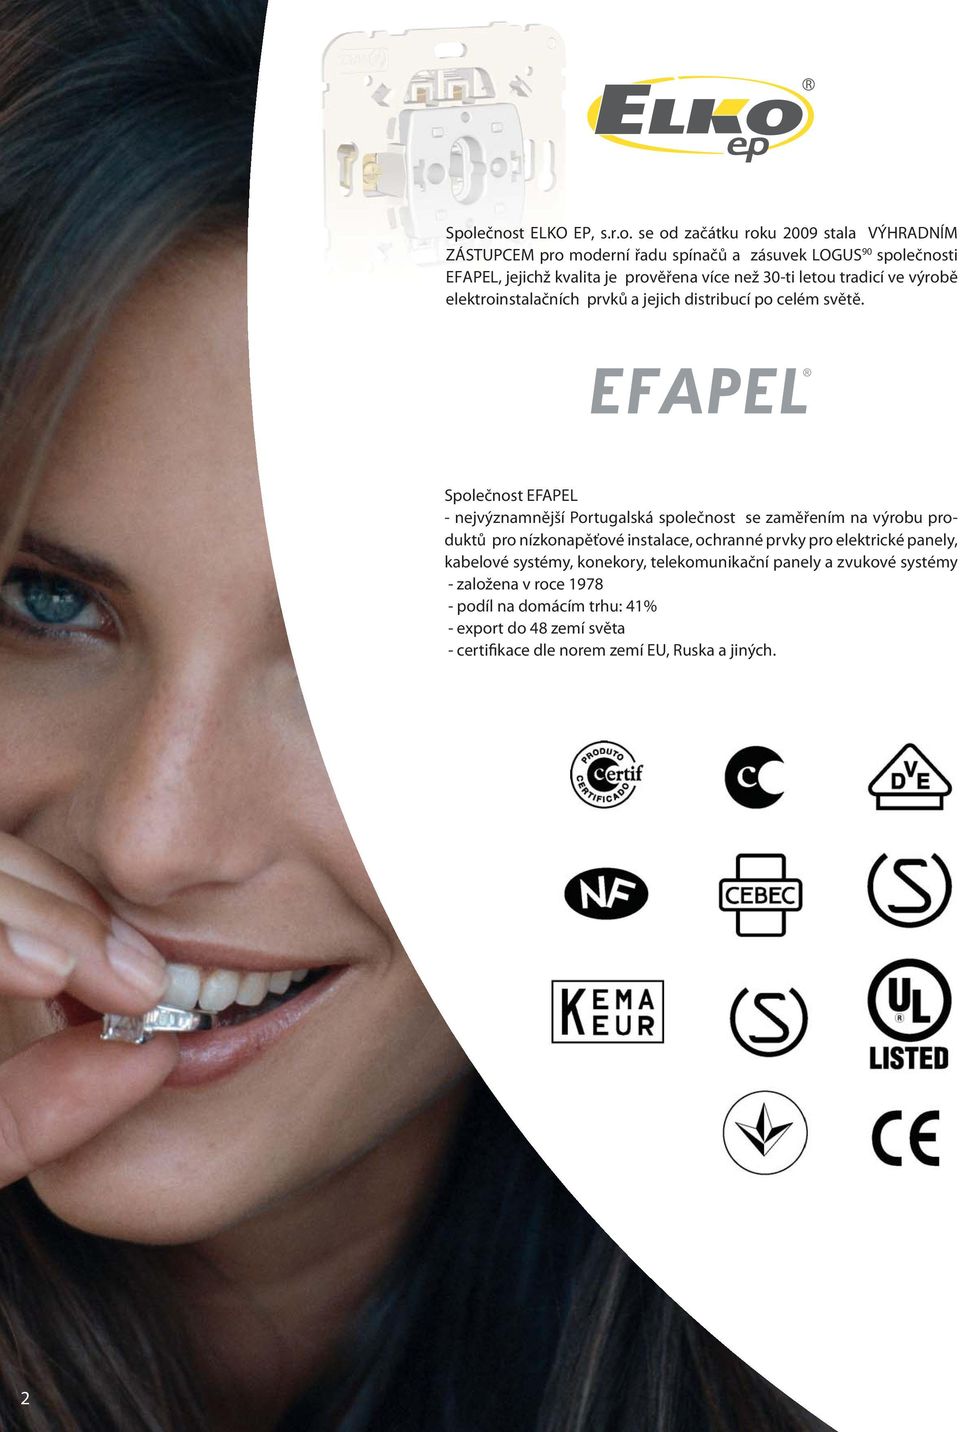 Společnost EFAPEL - nejvýznamnější Portugalská společnost se zaměřením na výrobu produktů pro nízkonapěťové instalace, ochranné prvky pro elektrické